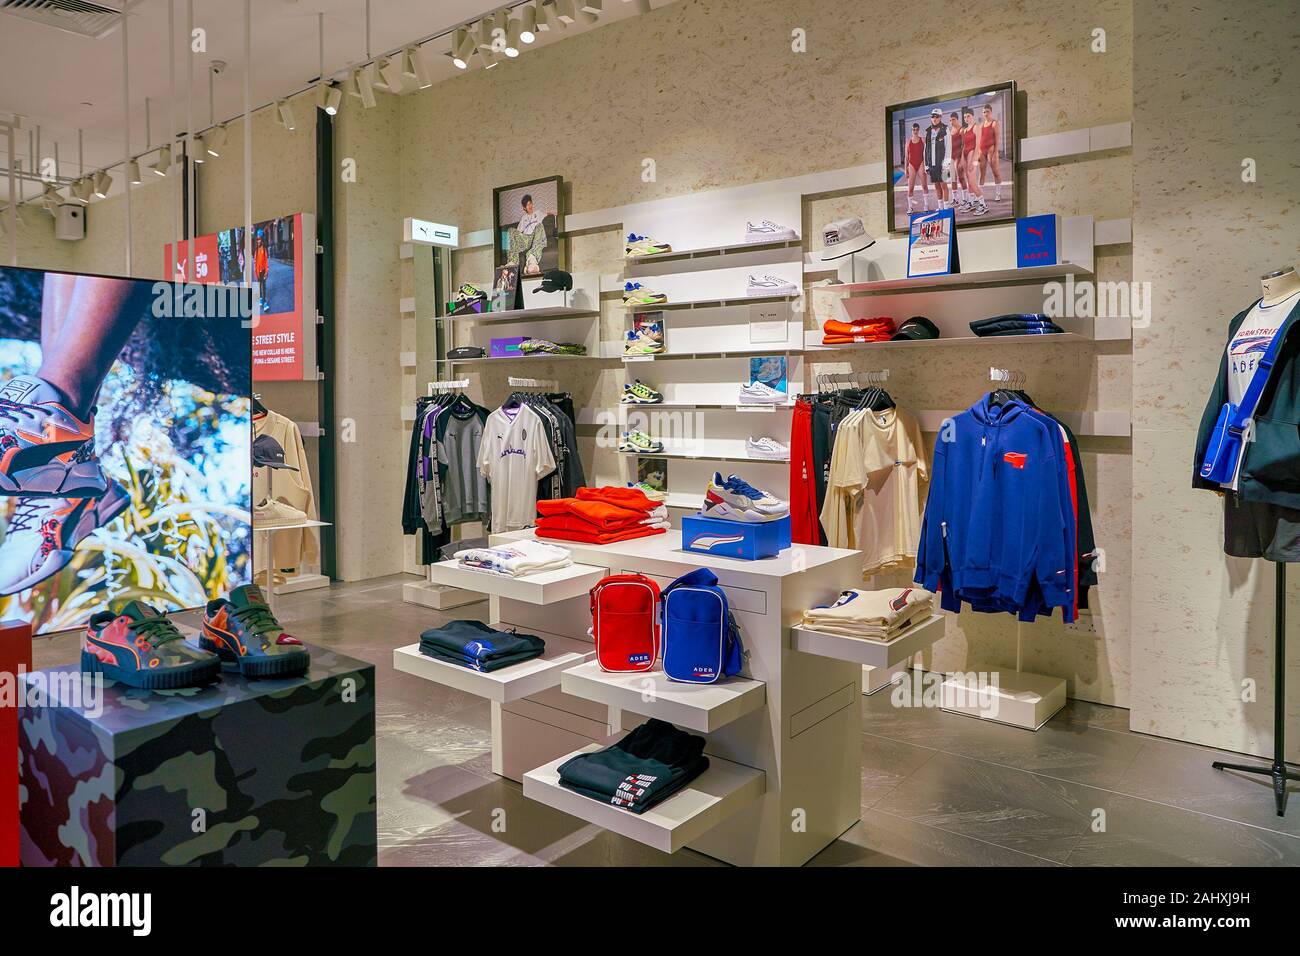 Shoppes at Marina Bay Sands Stock Photo 